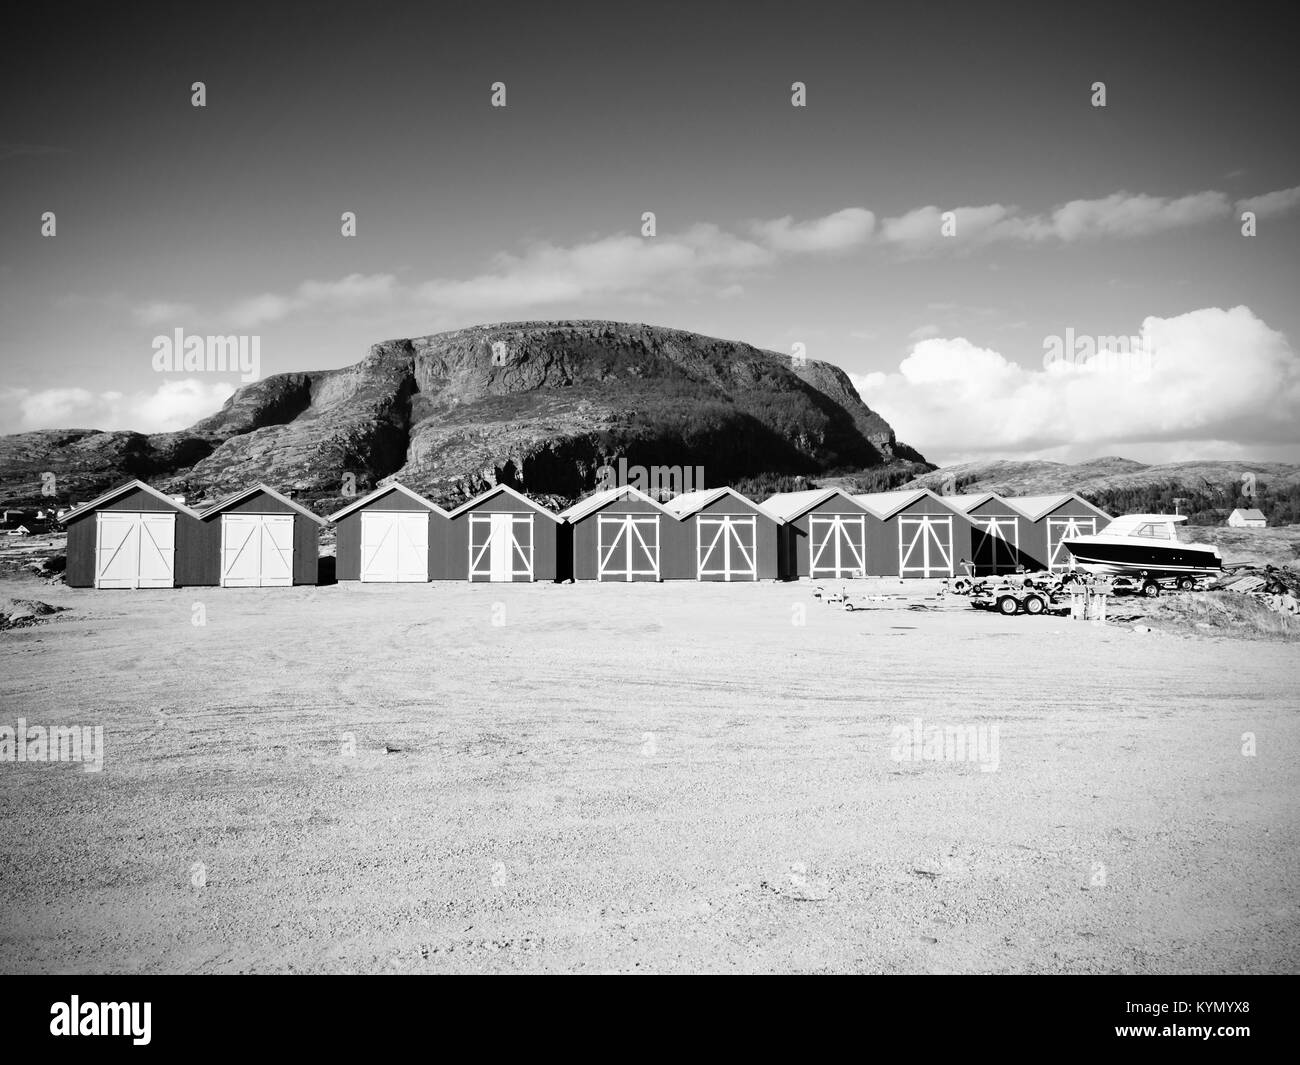 Maison de bateau rouge au quai, l'île rocky, en Norvège. Bâtiment blanc rouge traditionnelle jetée en bois à proximité de la mer froide. Rocky hill sombre en arrière-plan. Banque D'Images